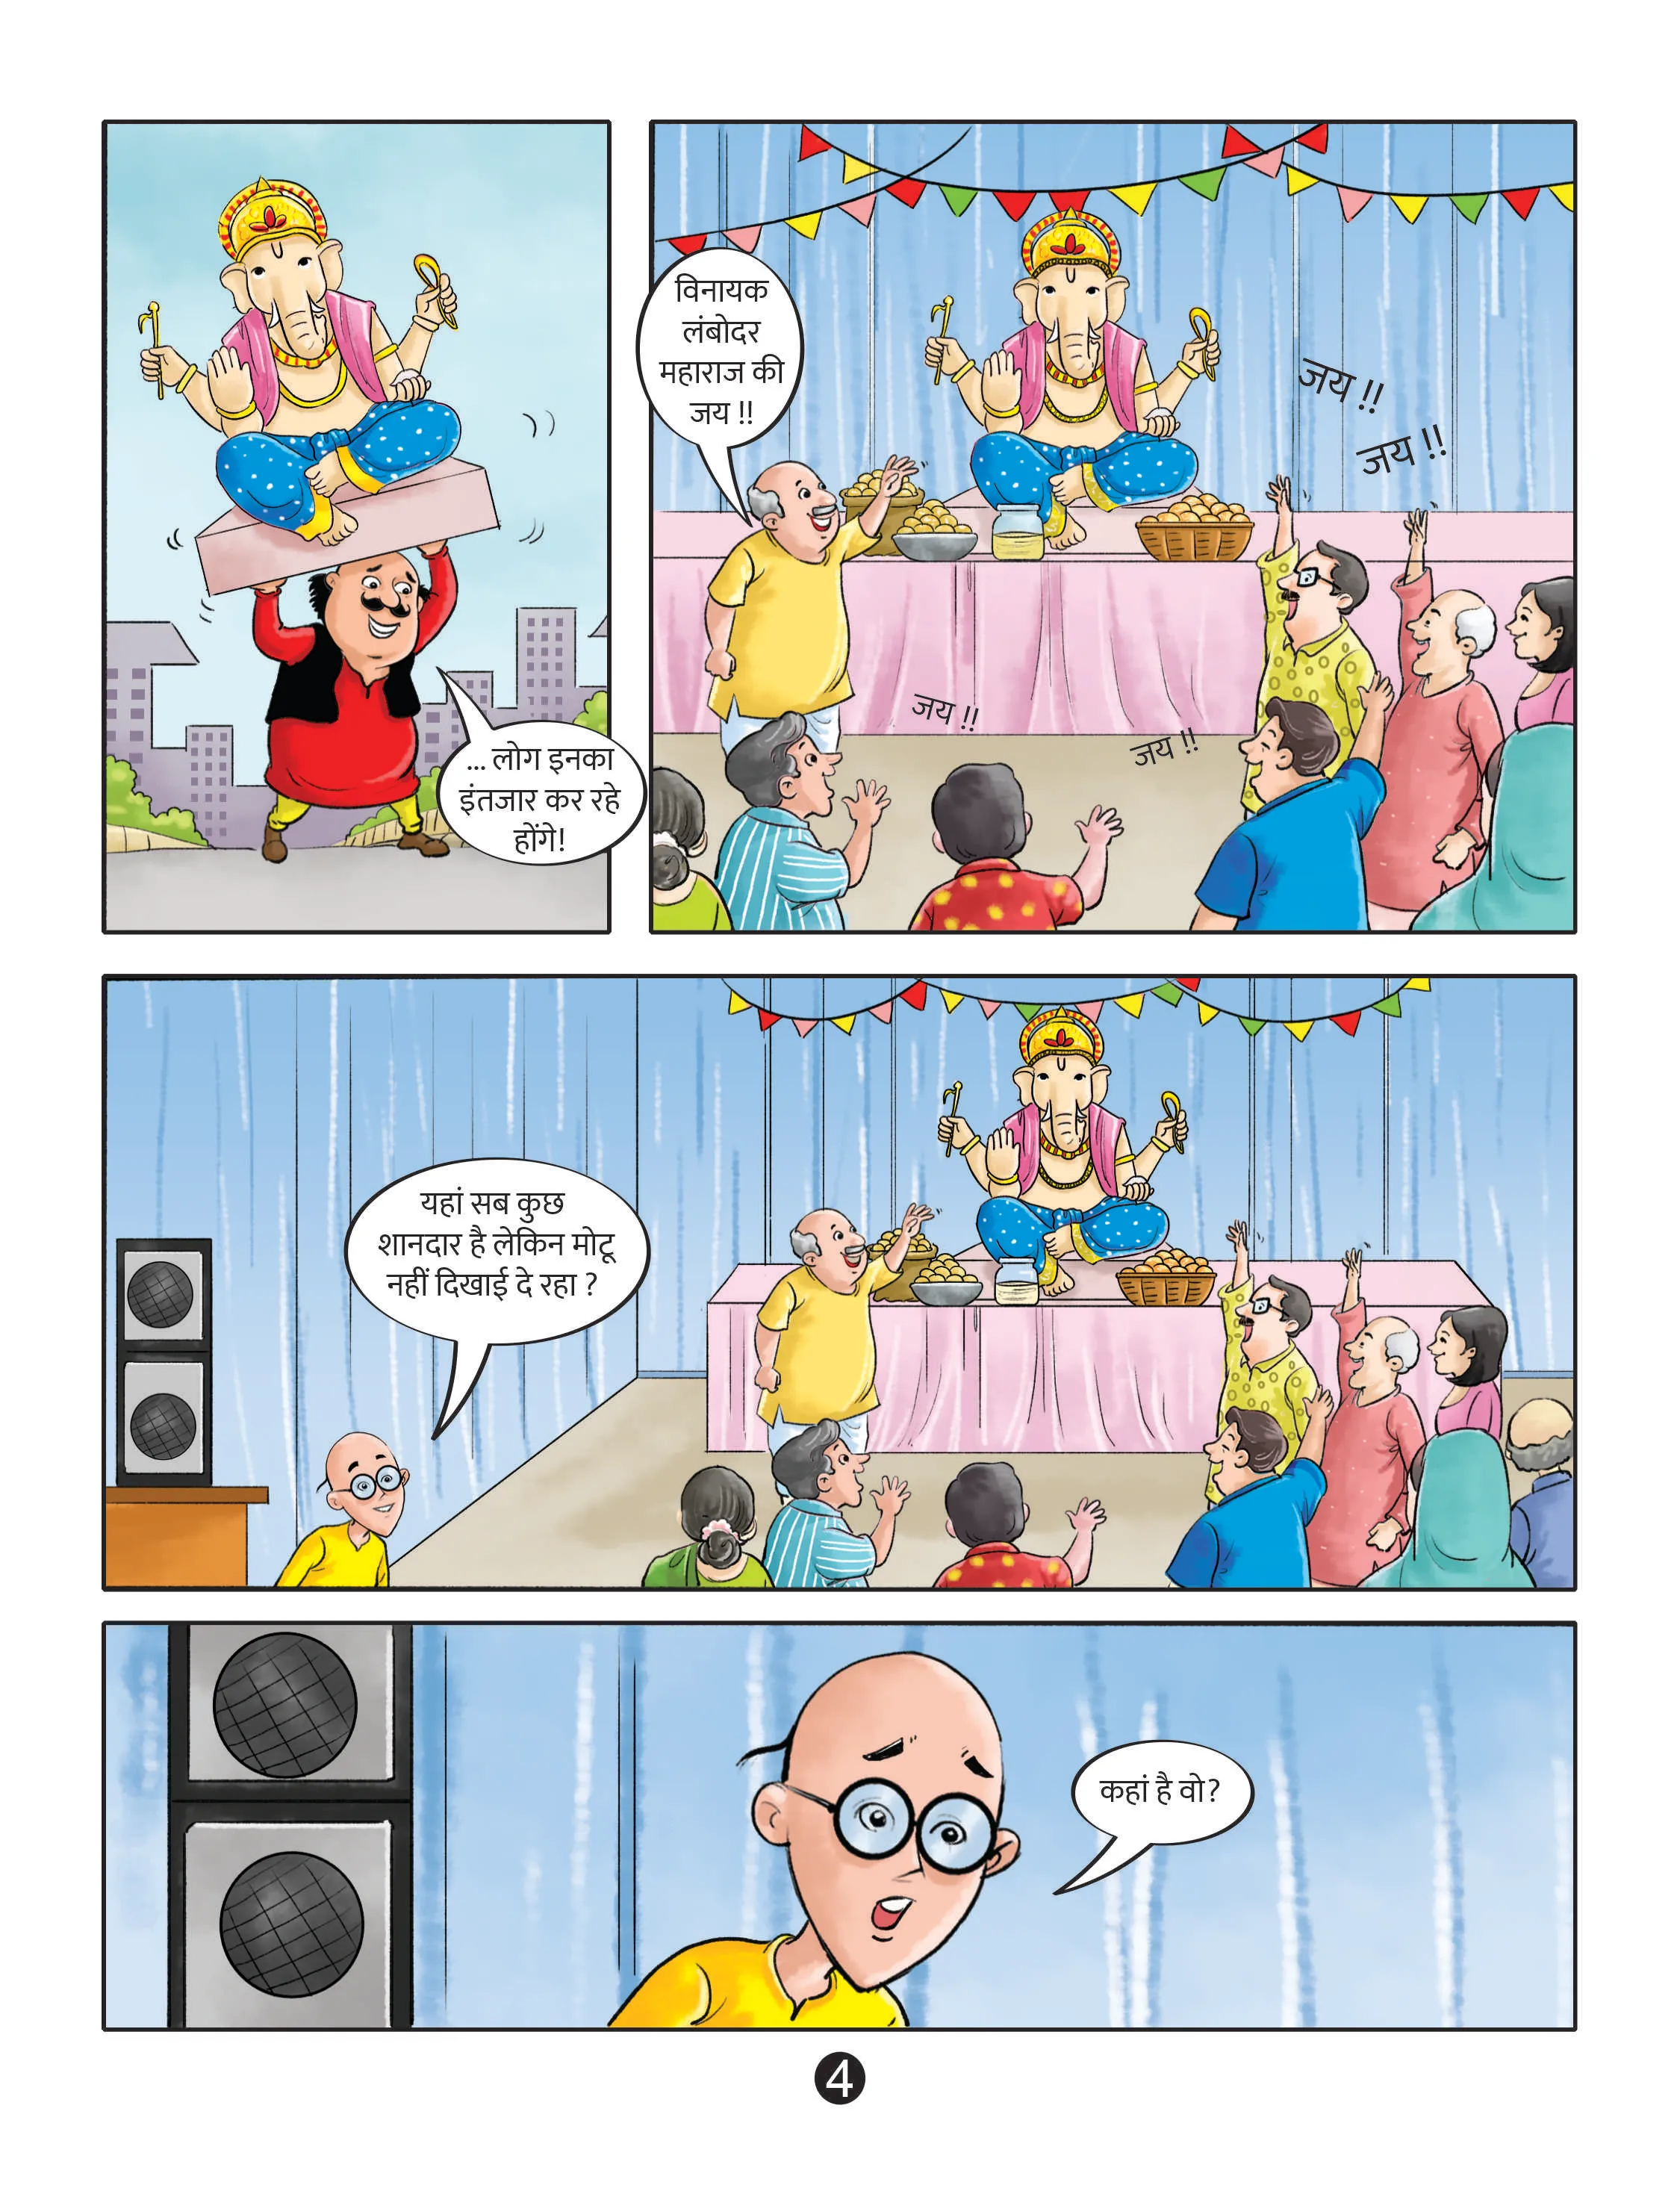 lotpot e-comics cartoon character motu patlu